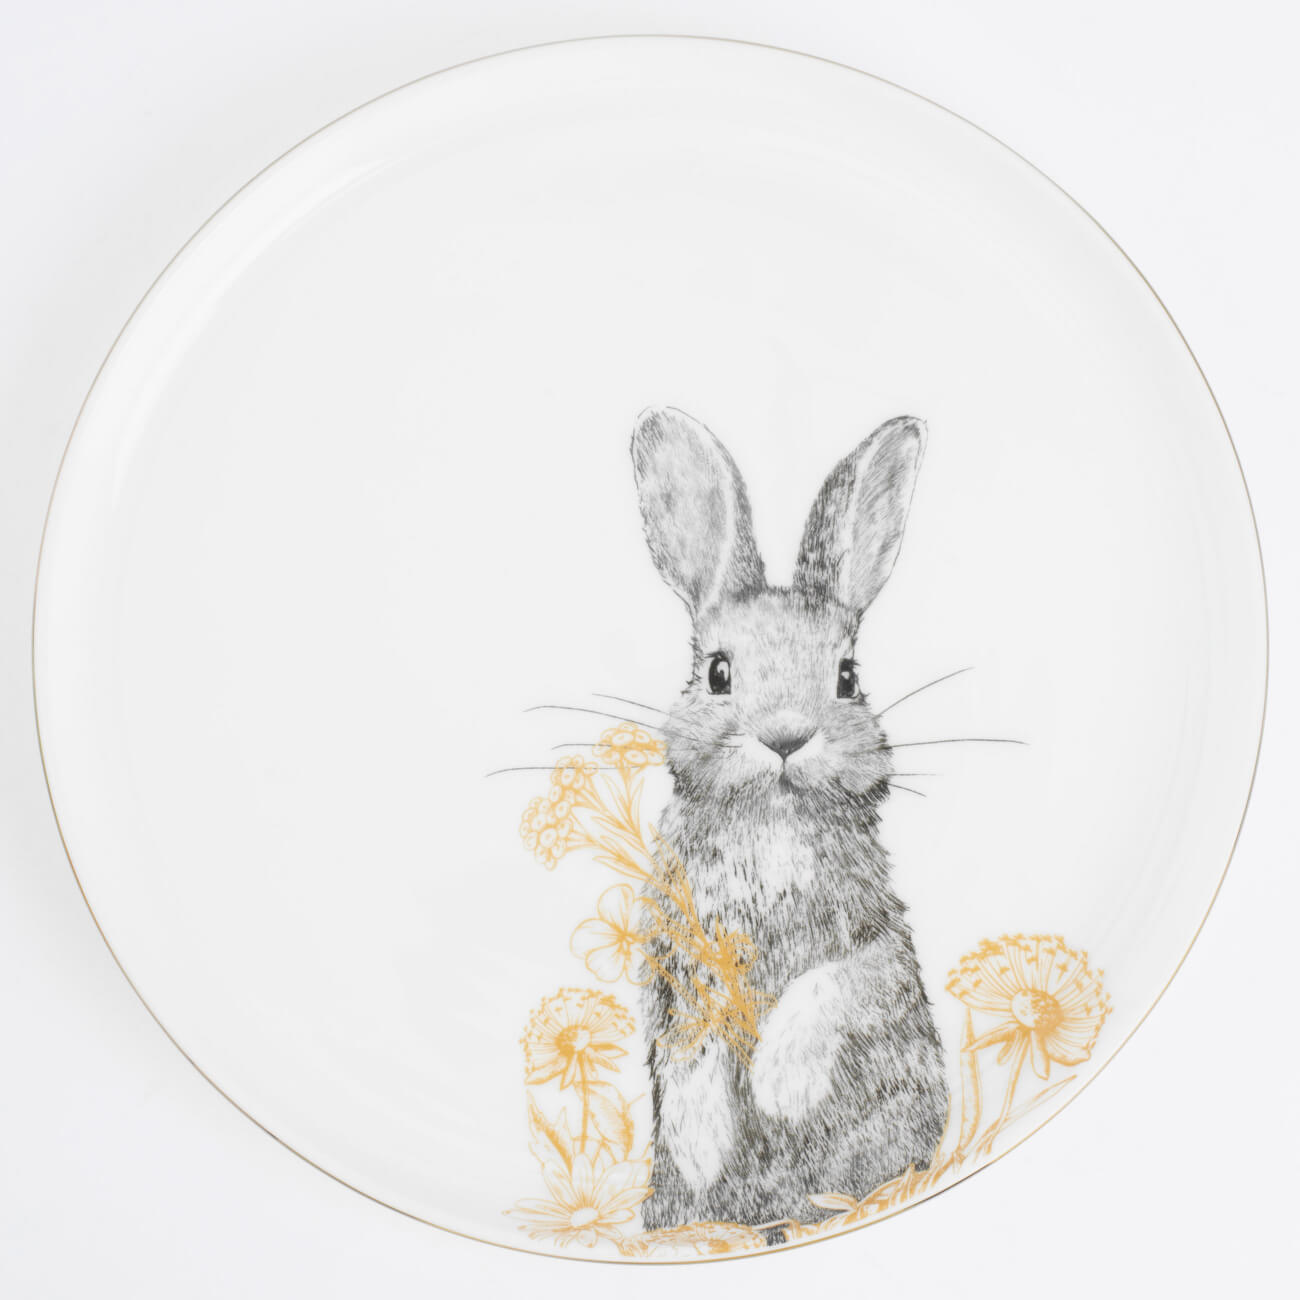 тарелка закусочная 24 см фарфор f белая с золотистым кантом кролик с ами rabbit gold Тарелка закусочная, 24 см, фарфор F, белая, с золотистым кантом, Кролик с цветами, Rabbit gold